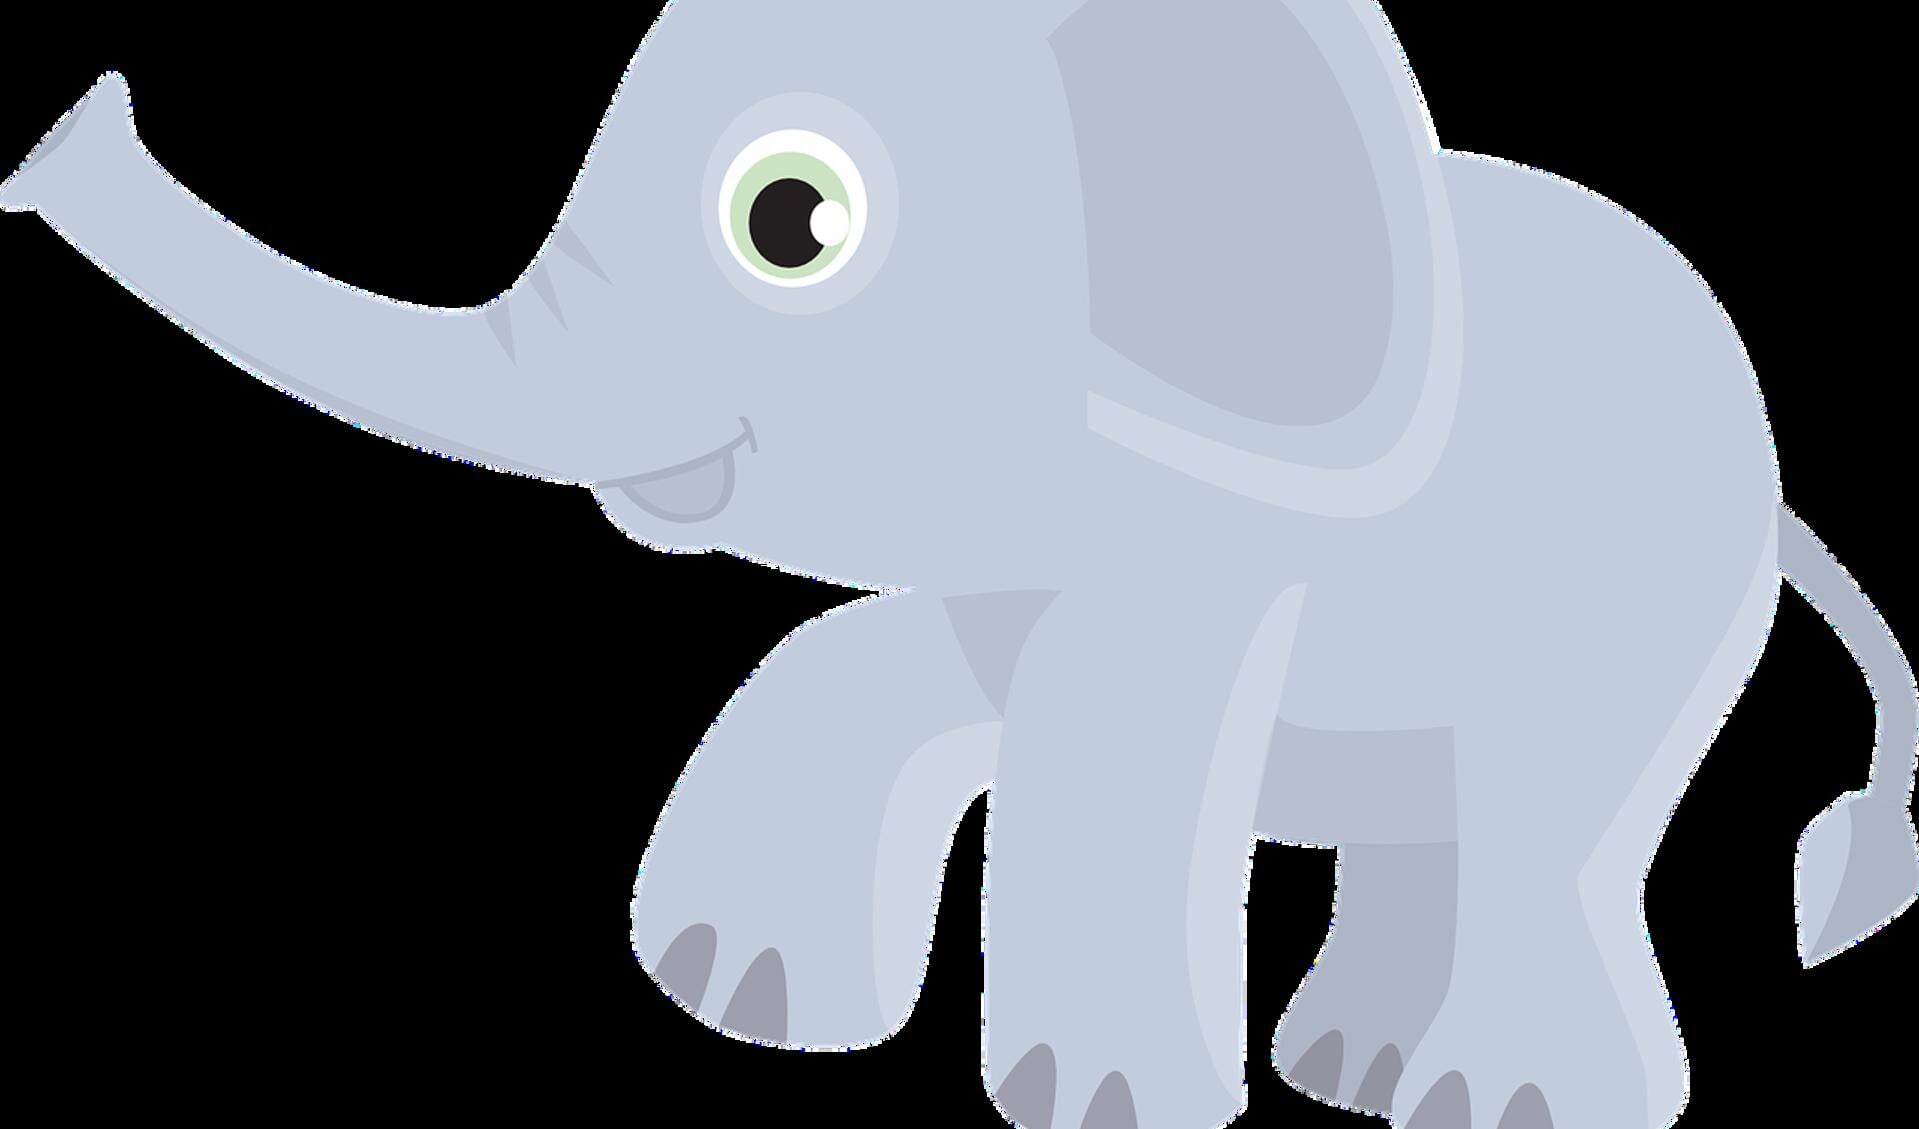 De VVD verwees naar de parabel van de olifant. 